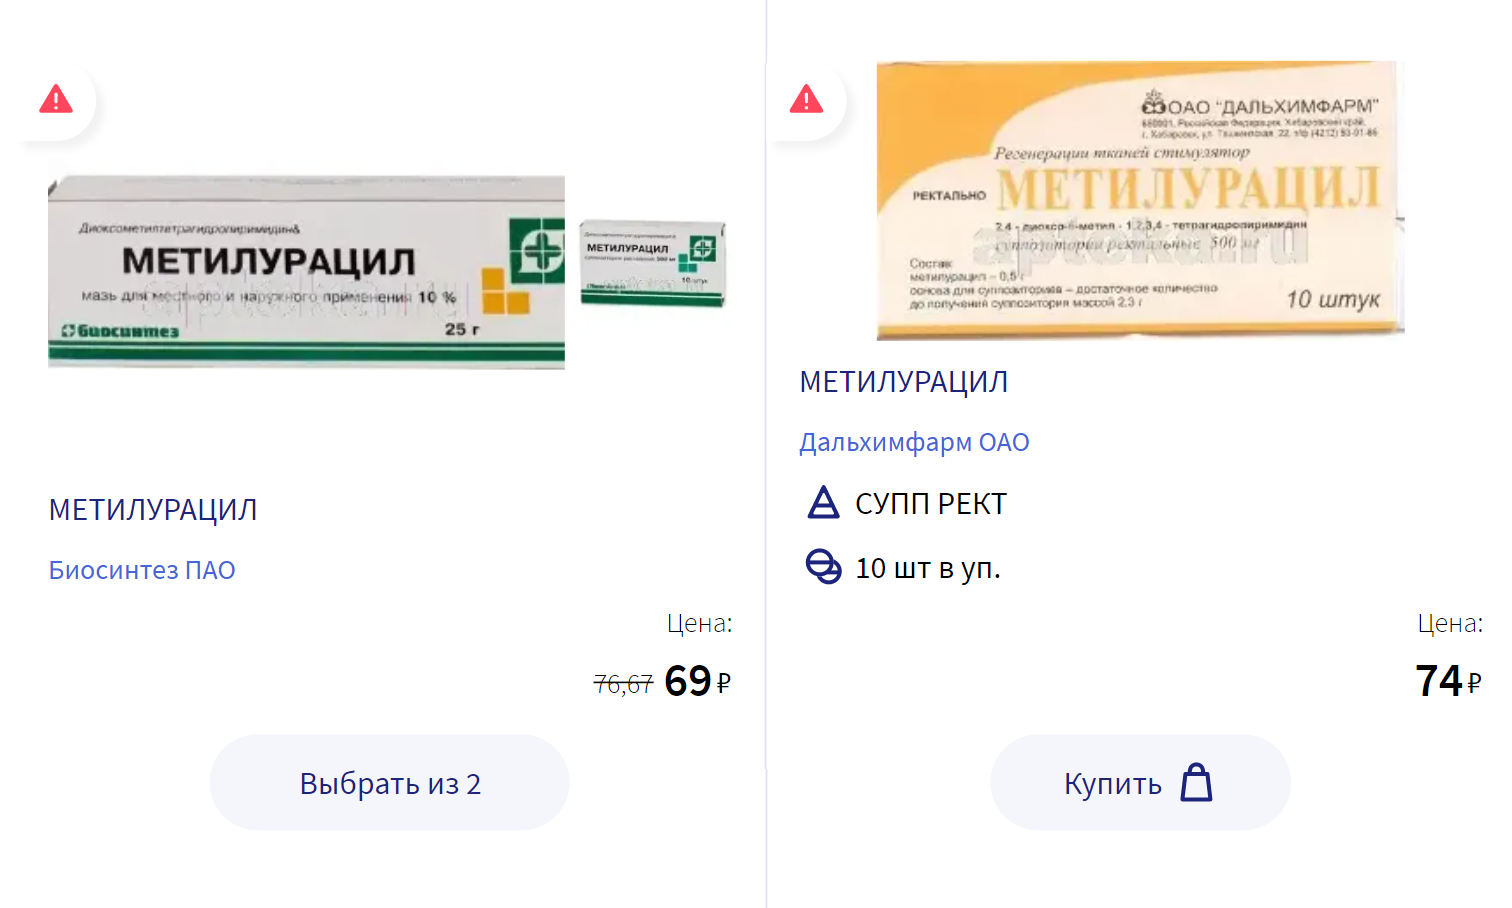 Цены на метилурациловые свечи — от 70 ₽ и выше. Разницы в эффективности я не заметила, поэтому пользовалась самыми дешевыми. Источник: apteka.ru